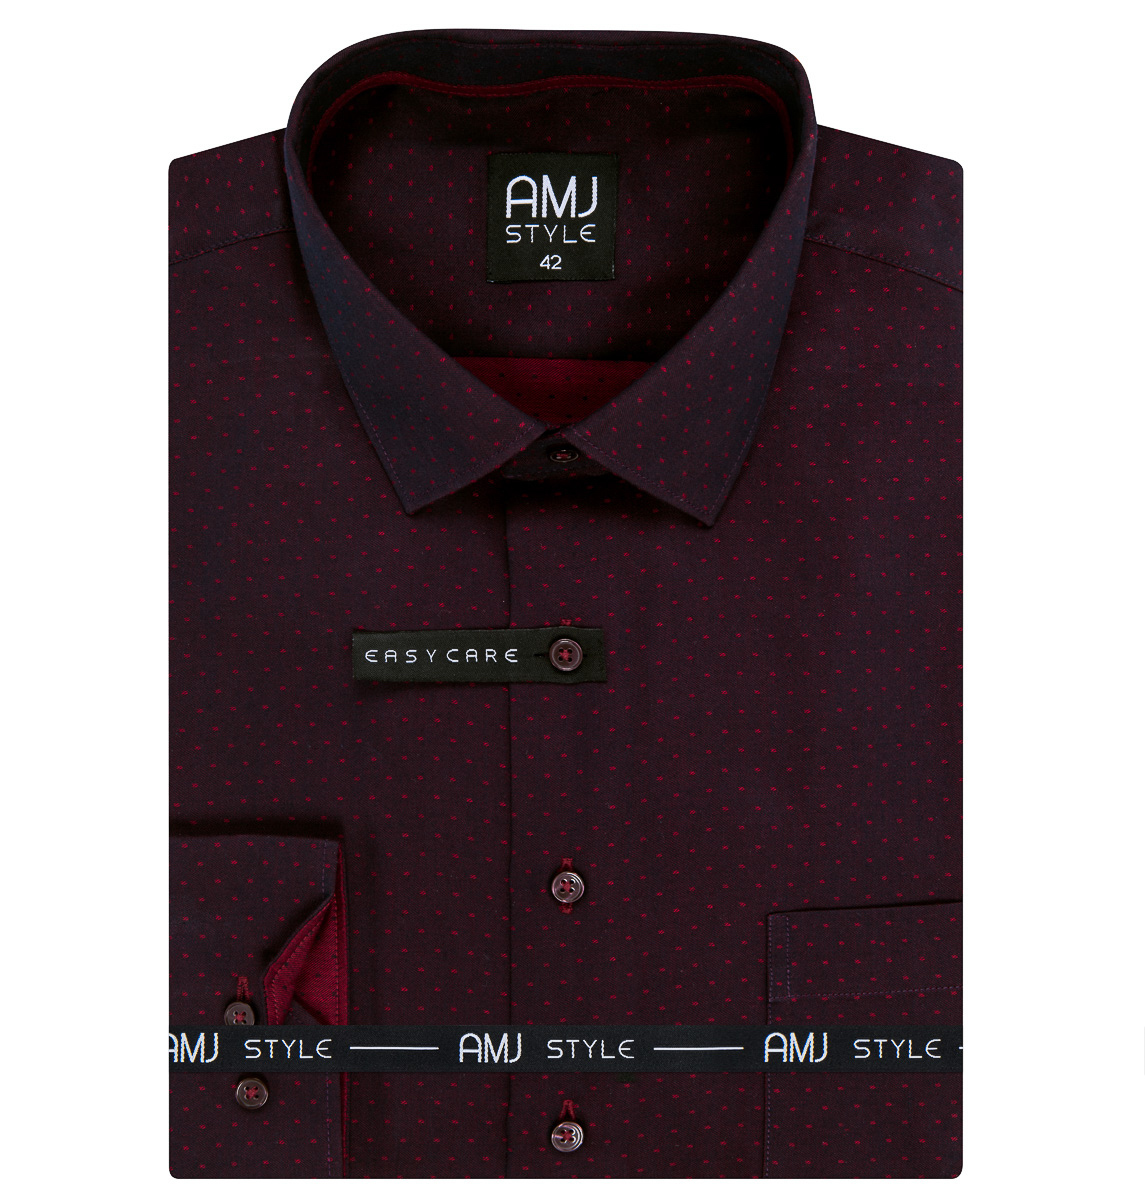 Pánská košile AMJ, vínová puntíkovaná VDR1179, dlouhý rukáv (regular + prodloužený slim-fit)